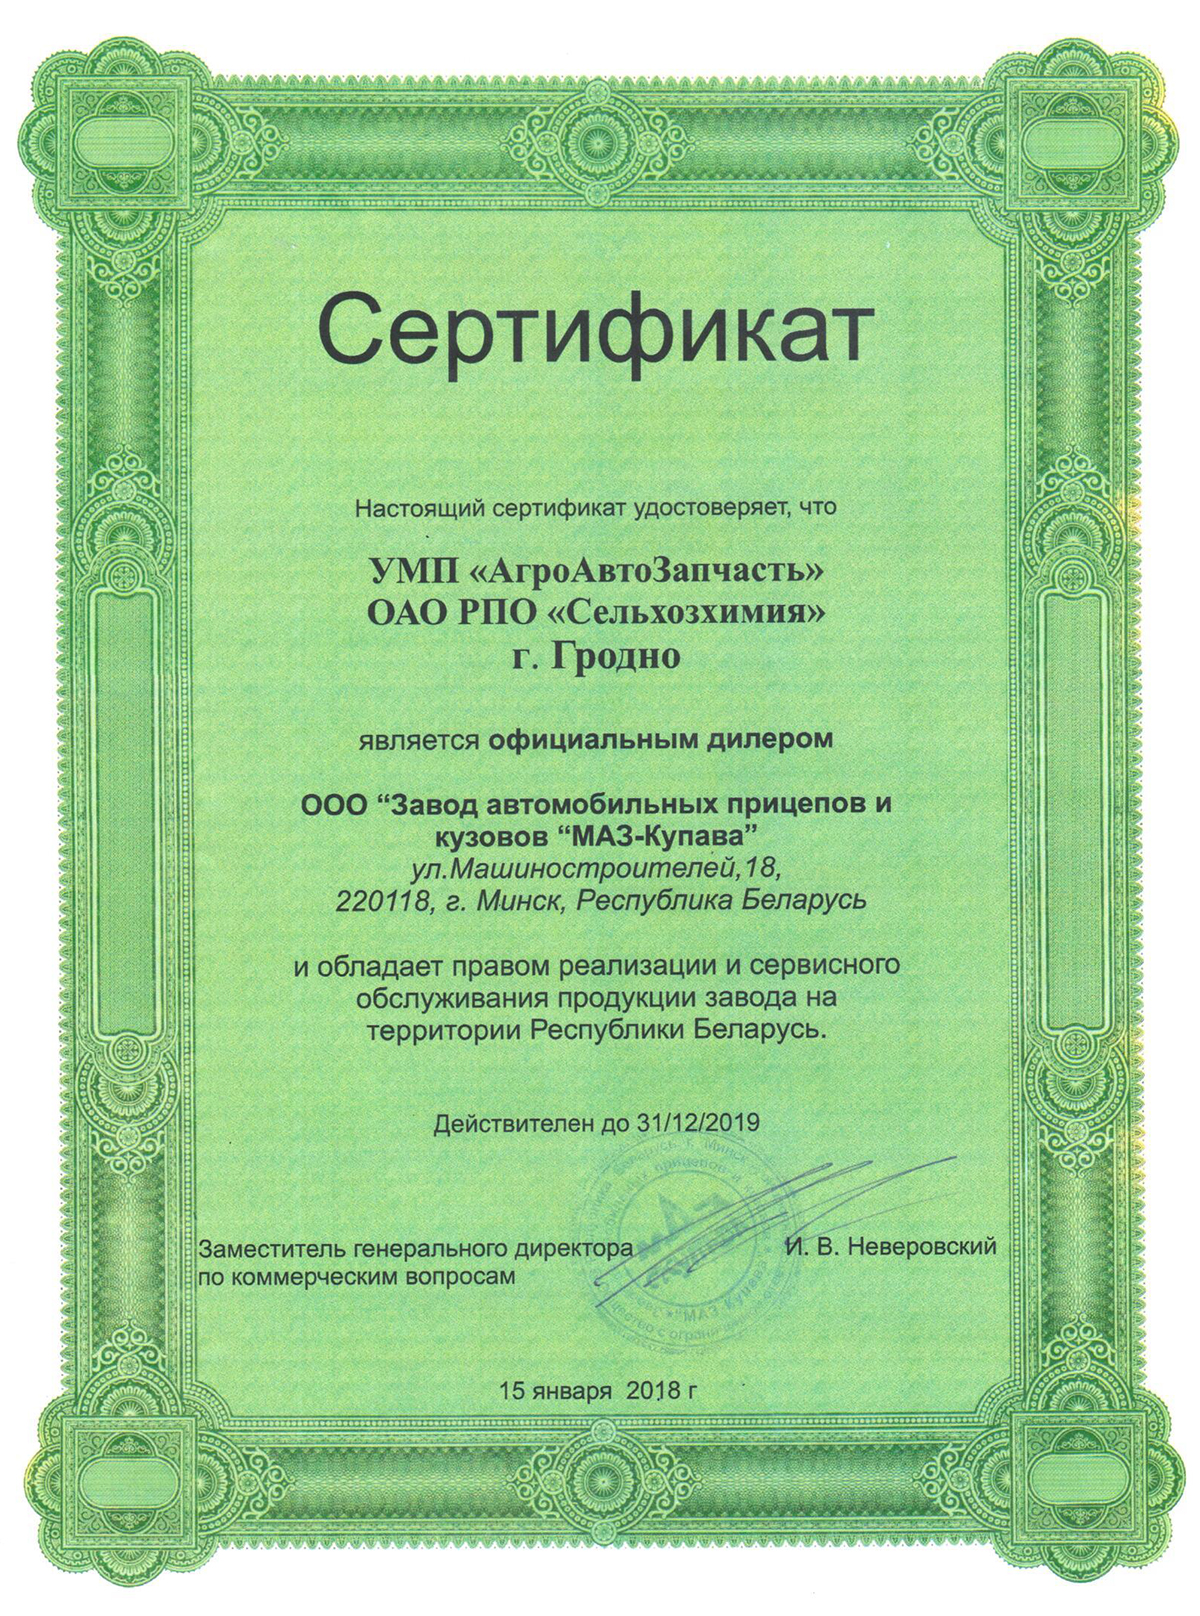 Сертификат МАЗ-Купава 2019